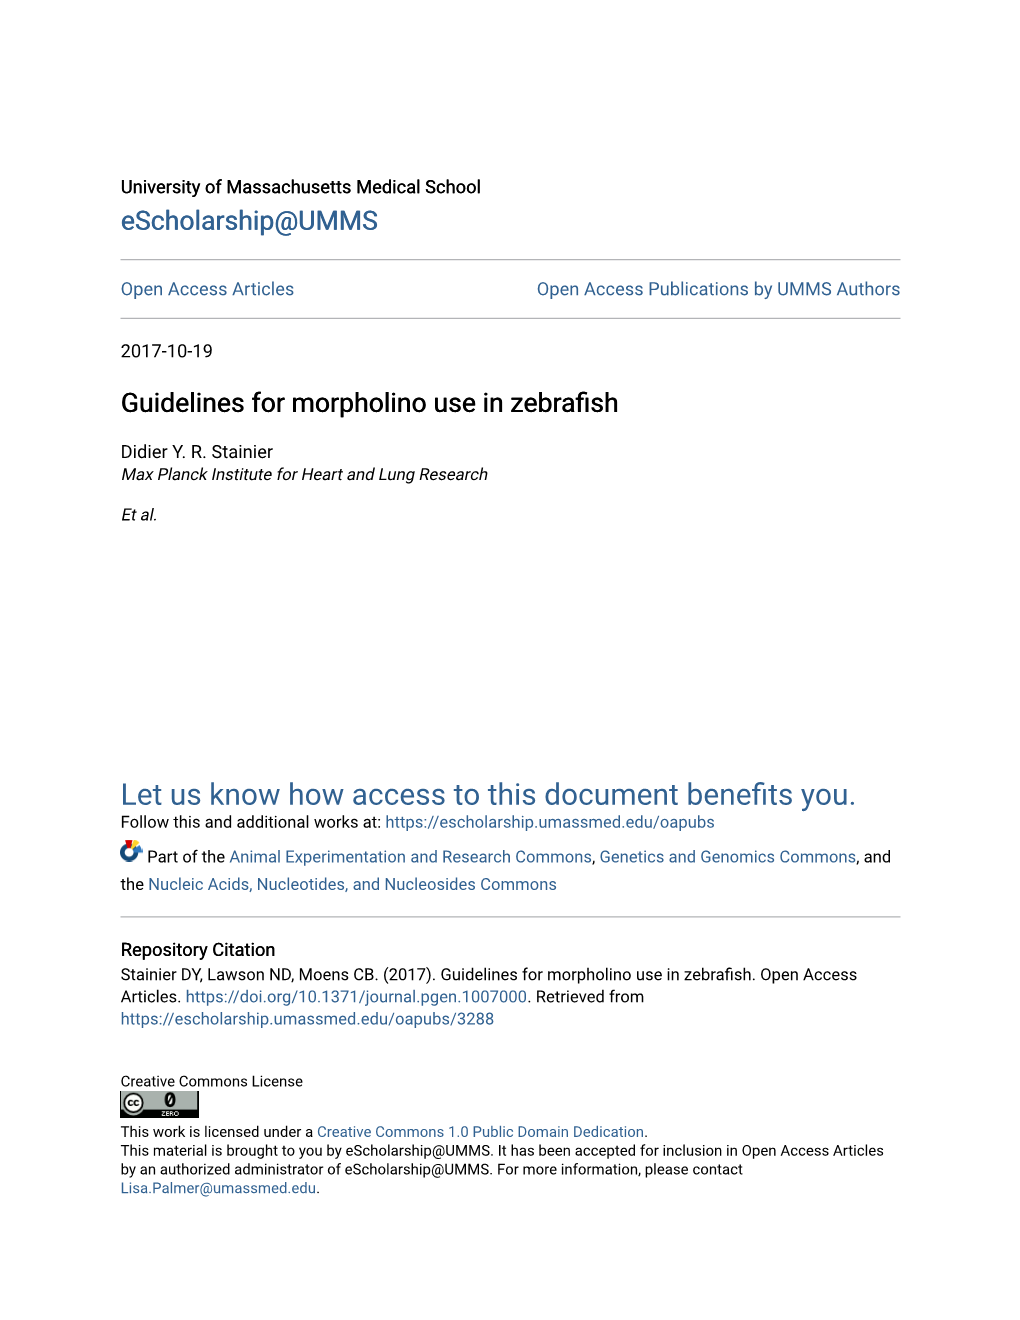 Guidelines for Morpholino Use in Zebrafish